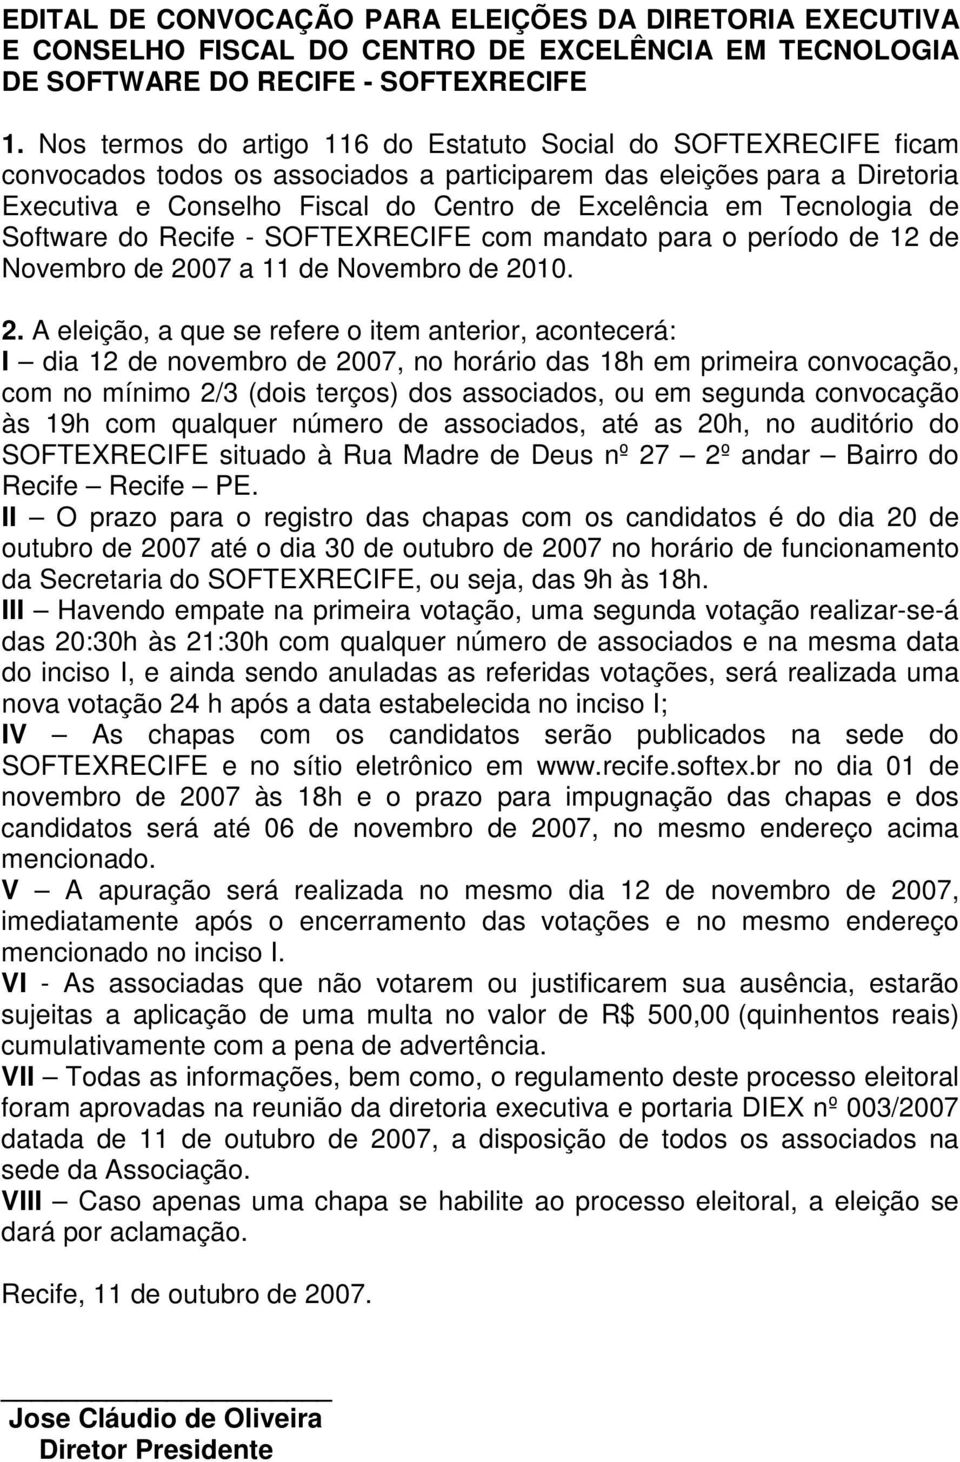 Tecnologia de Software do Recife - SOFTEXRECIFE com mandato para o período de 12 de Novembro de 20